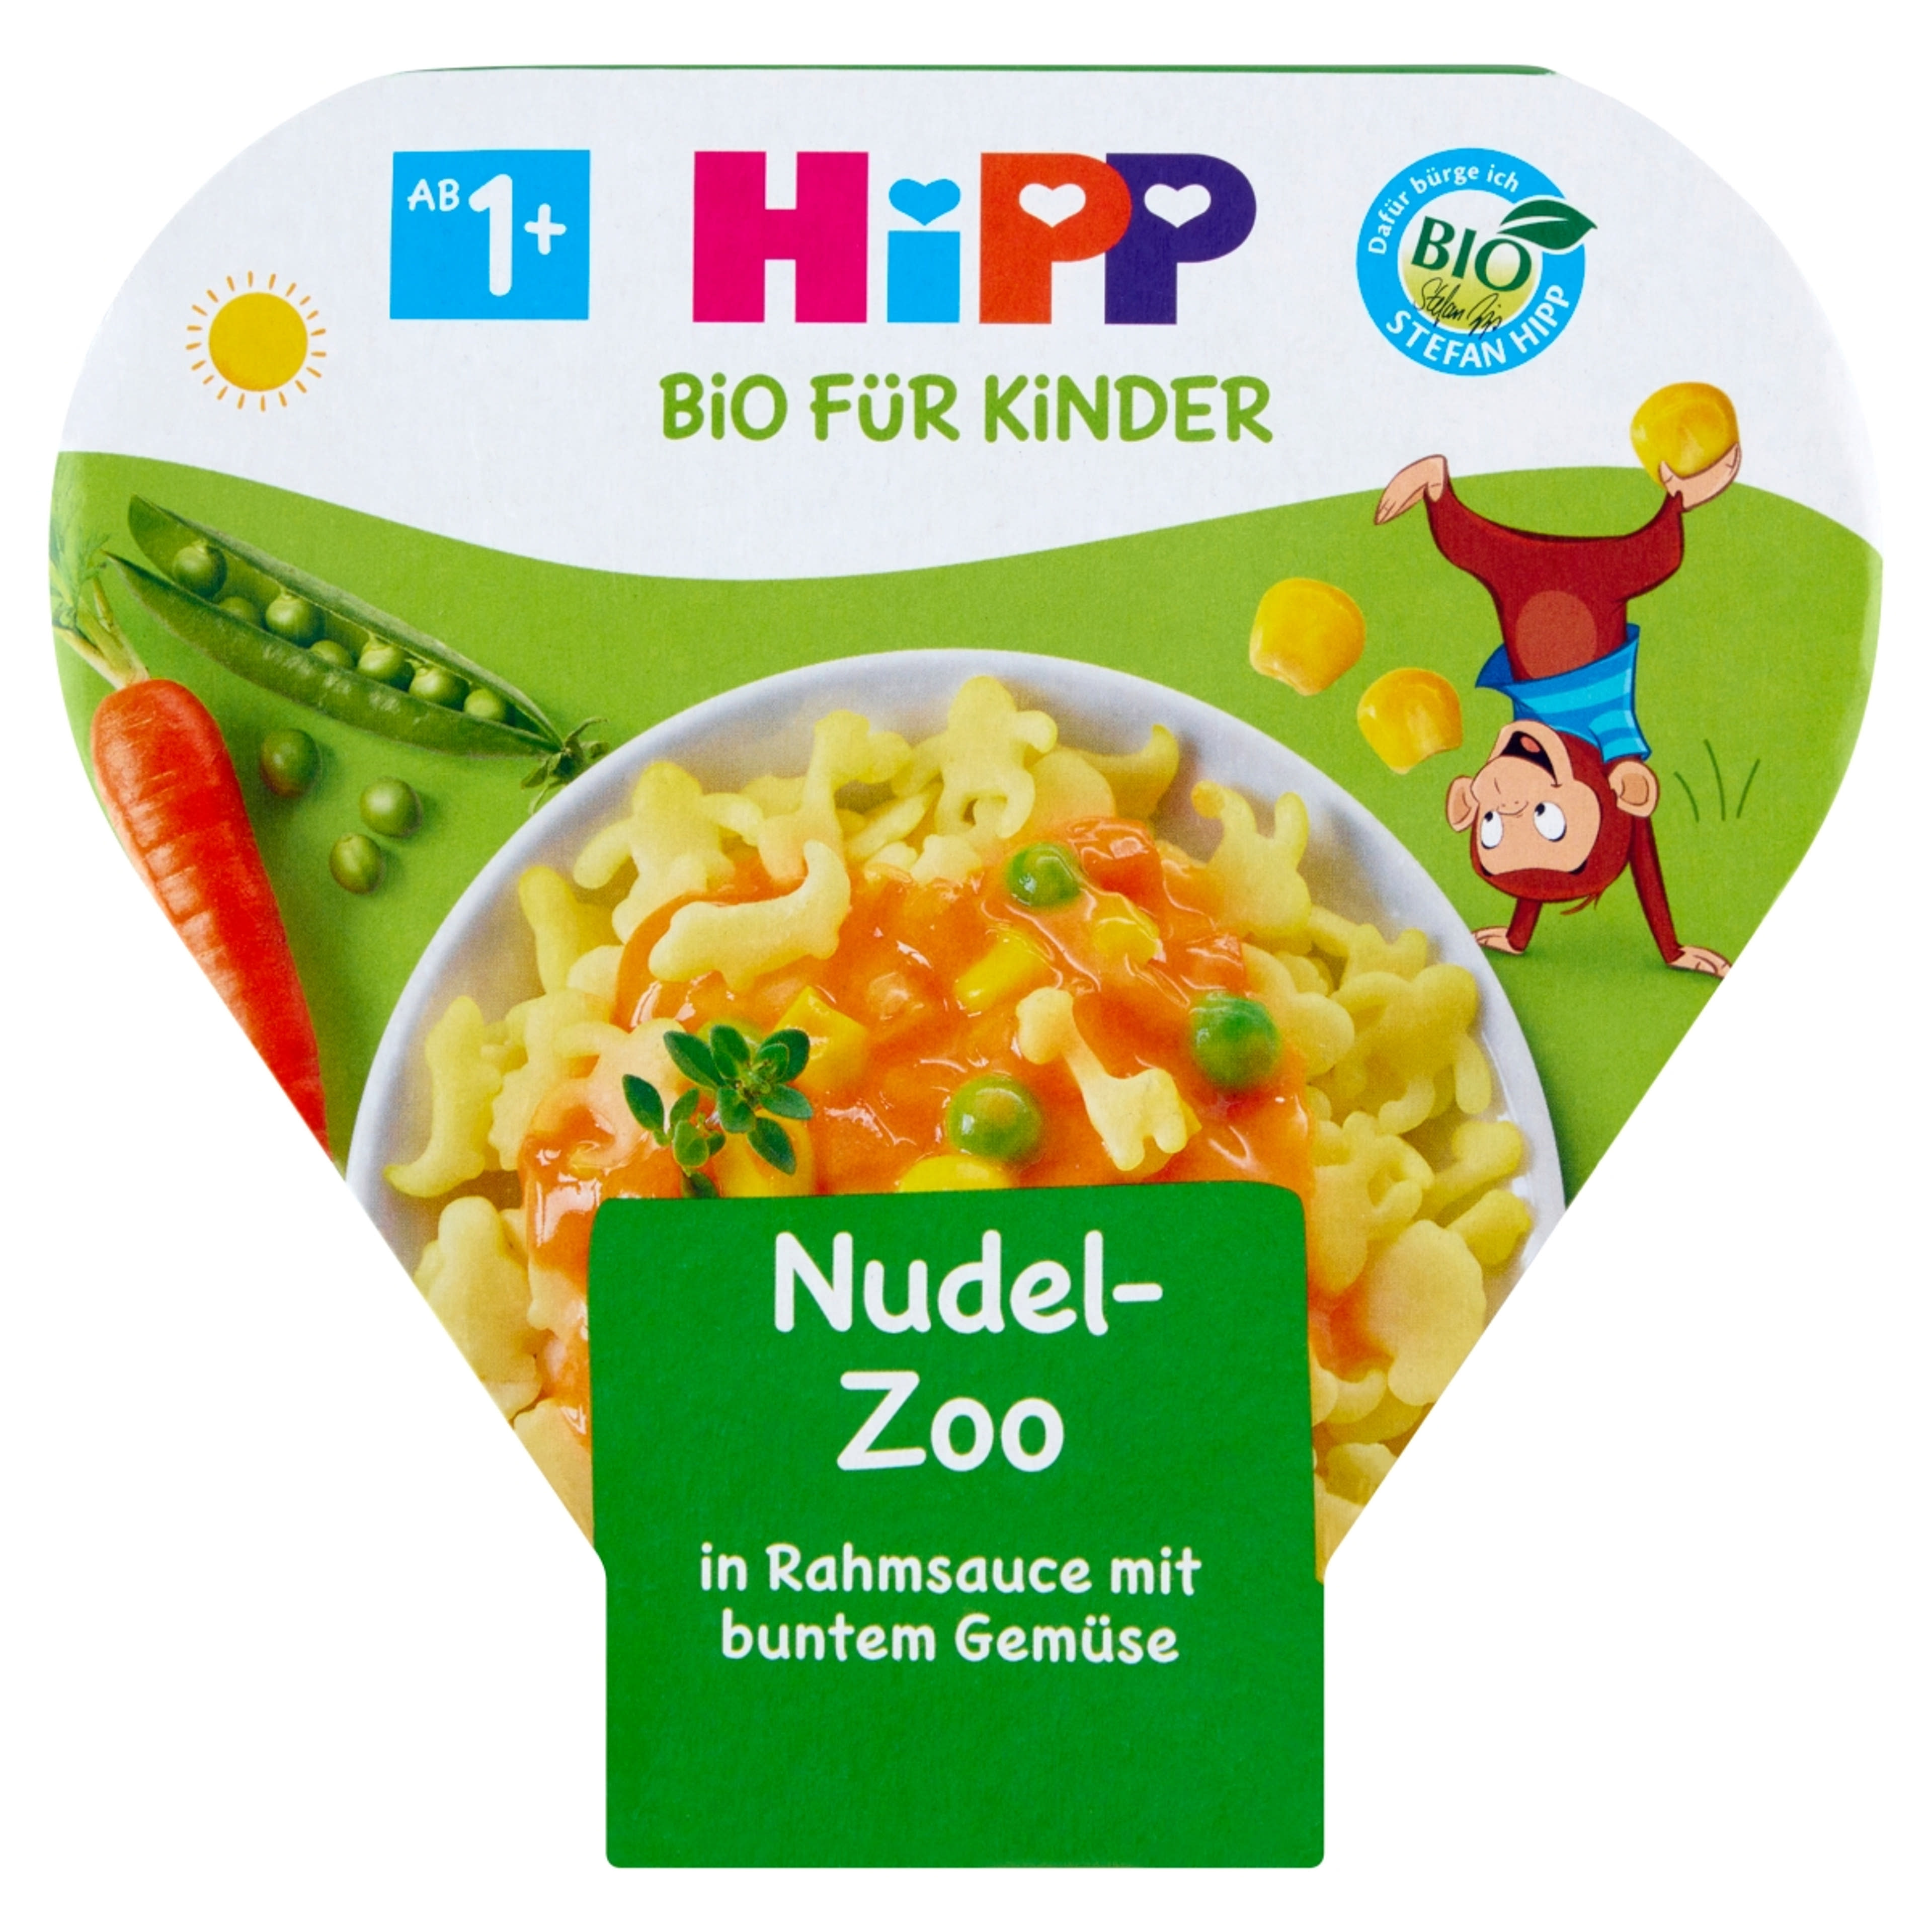 HiPP Bio állatfigurás tészta zöldségekkel tejszínes szószban tésztakészítmény 1 éves kortól - 250 g-1